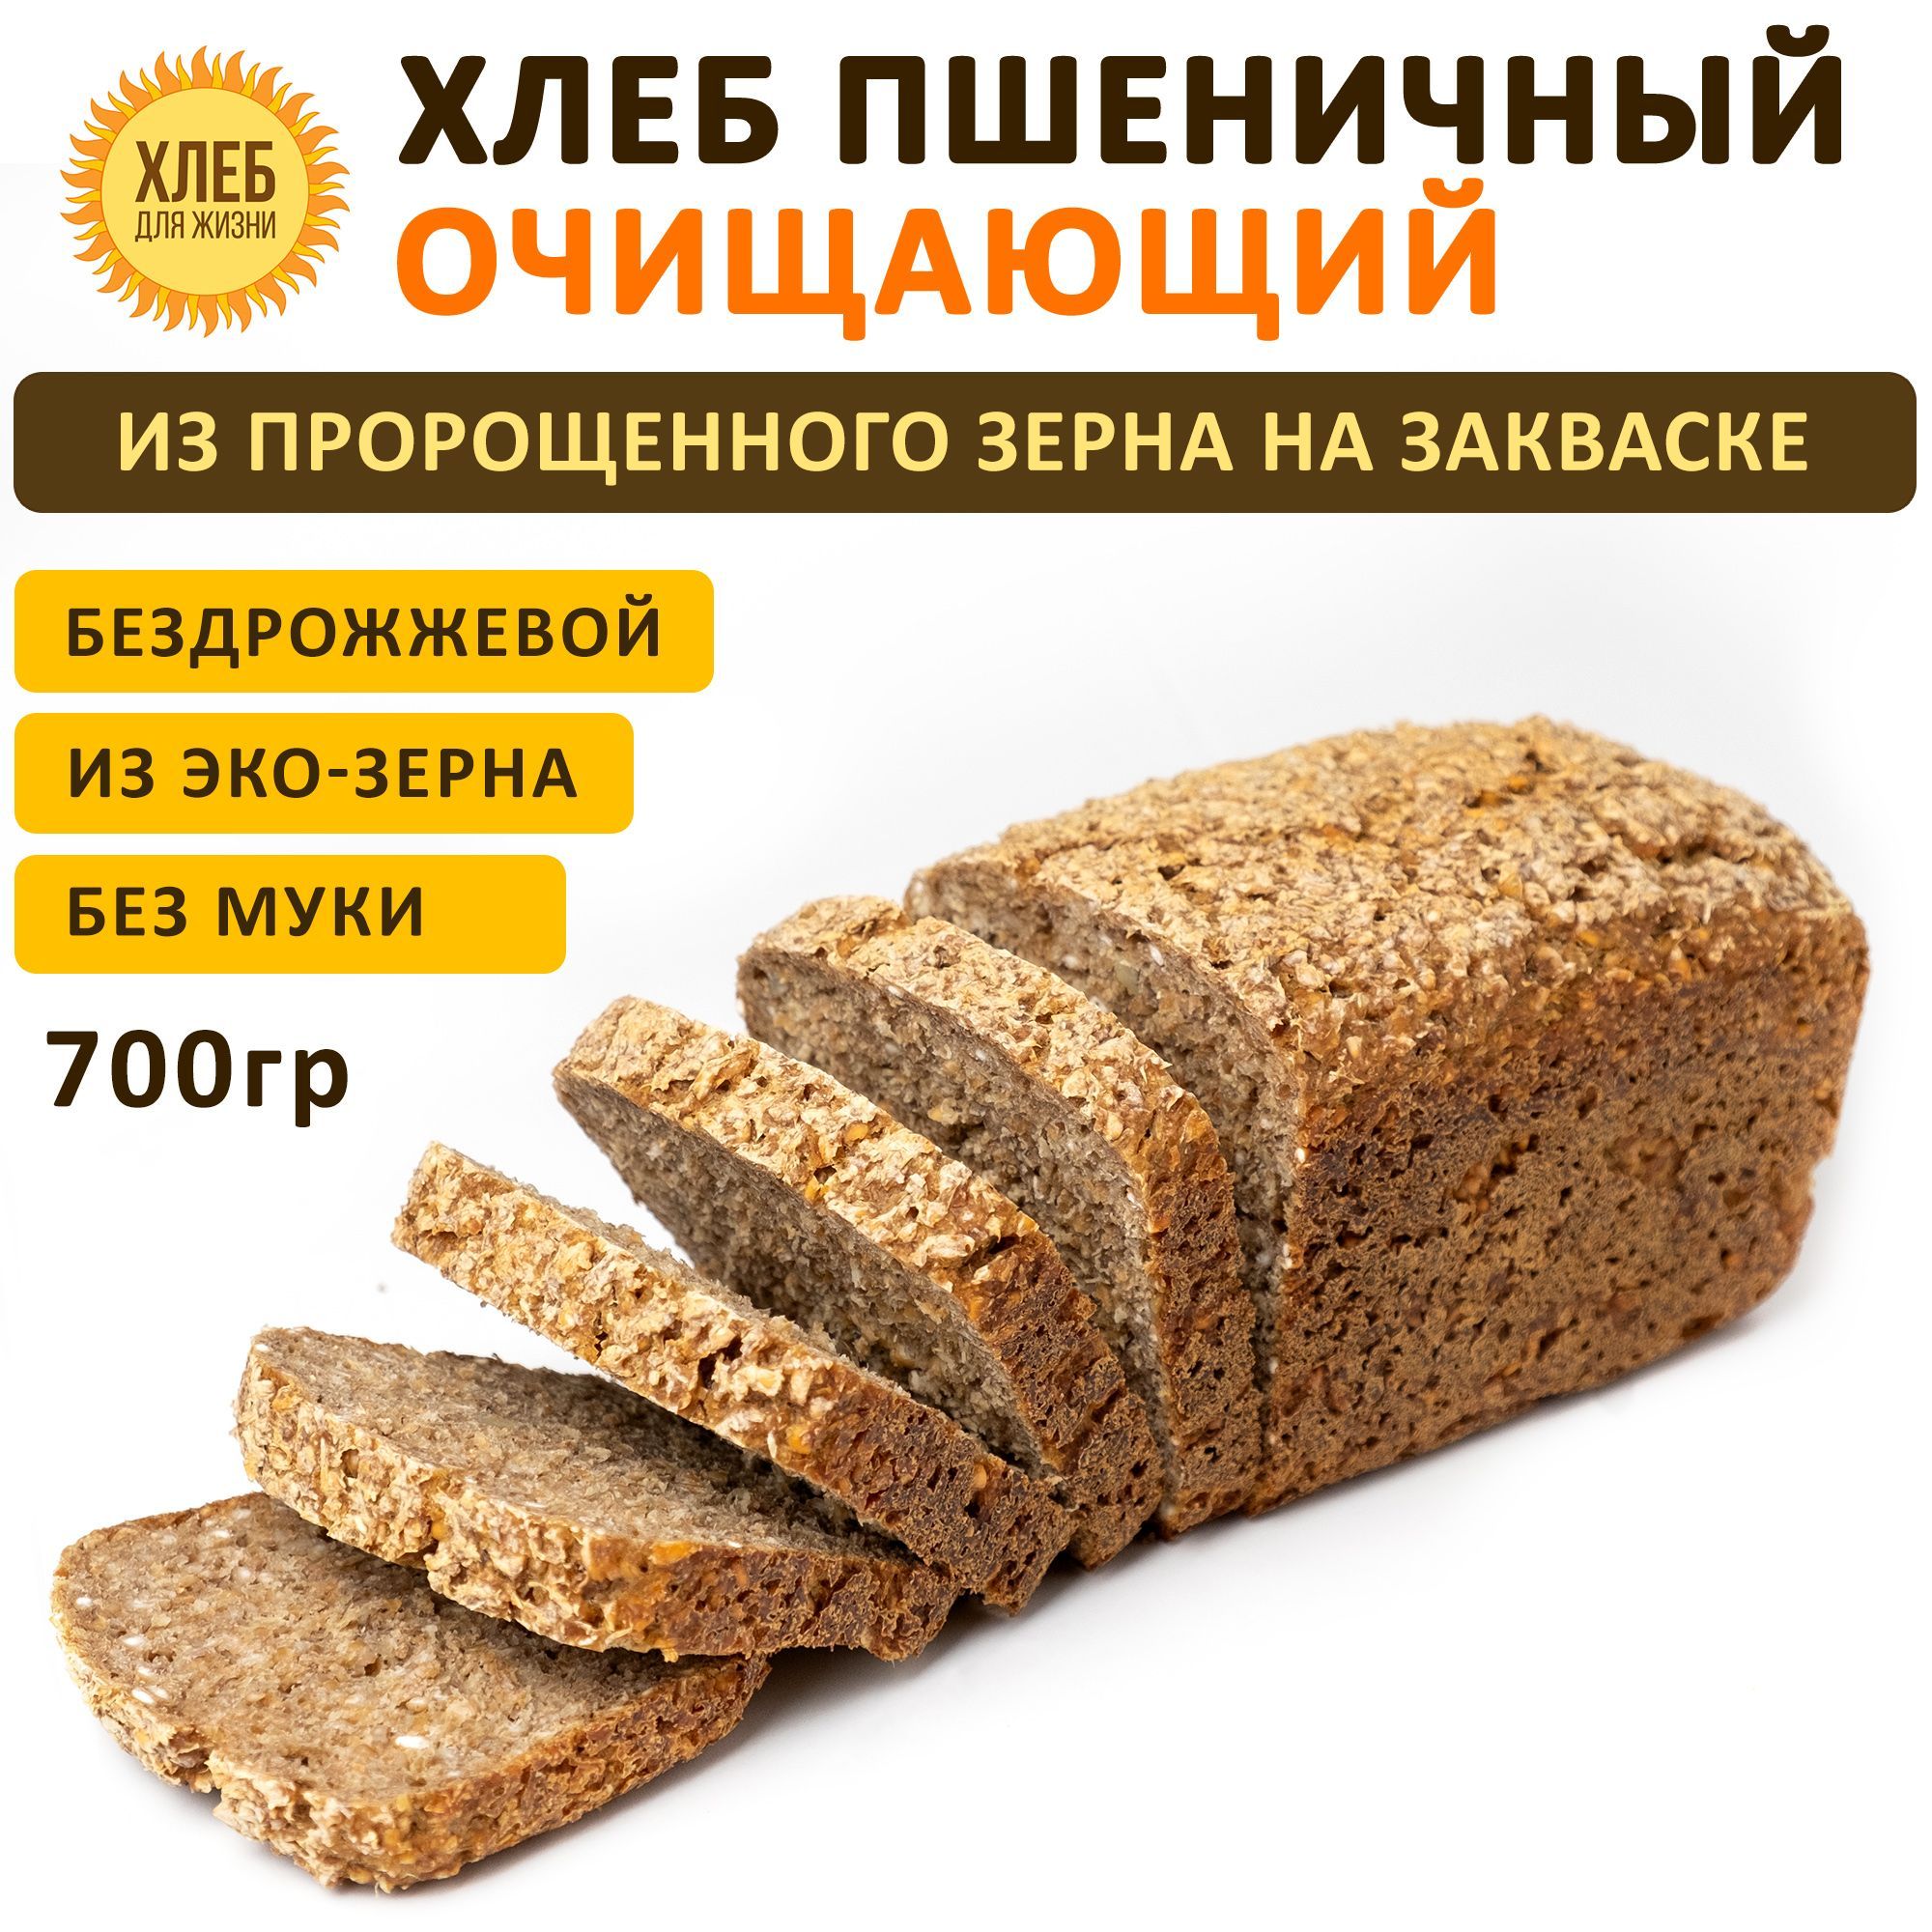 ПП Хлеб - 26 лучших пошаговых рецептов с фото и видео